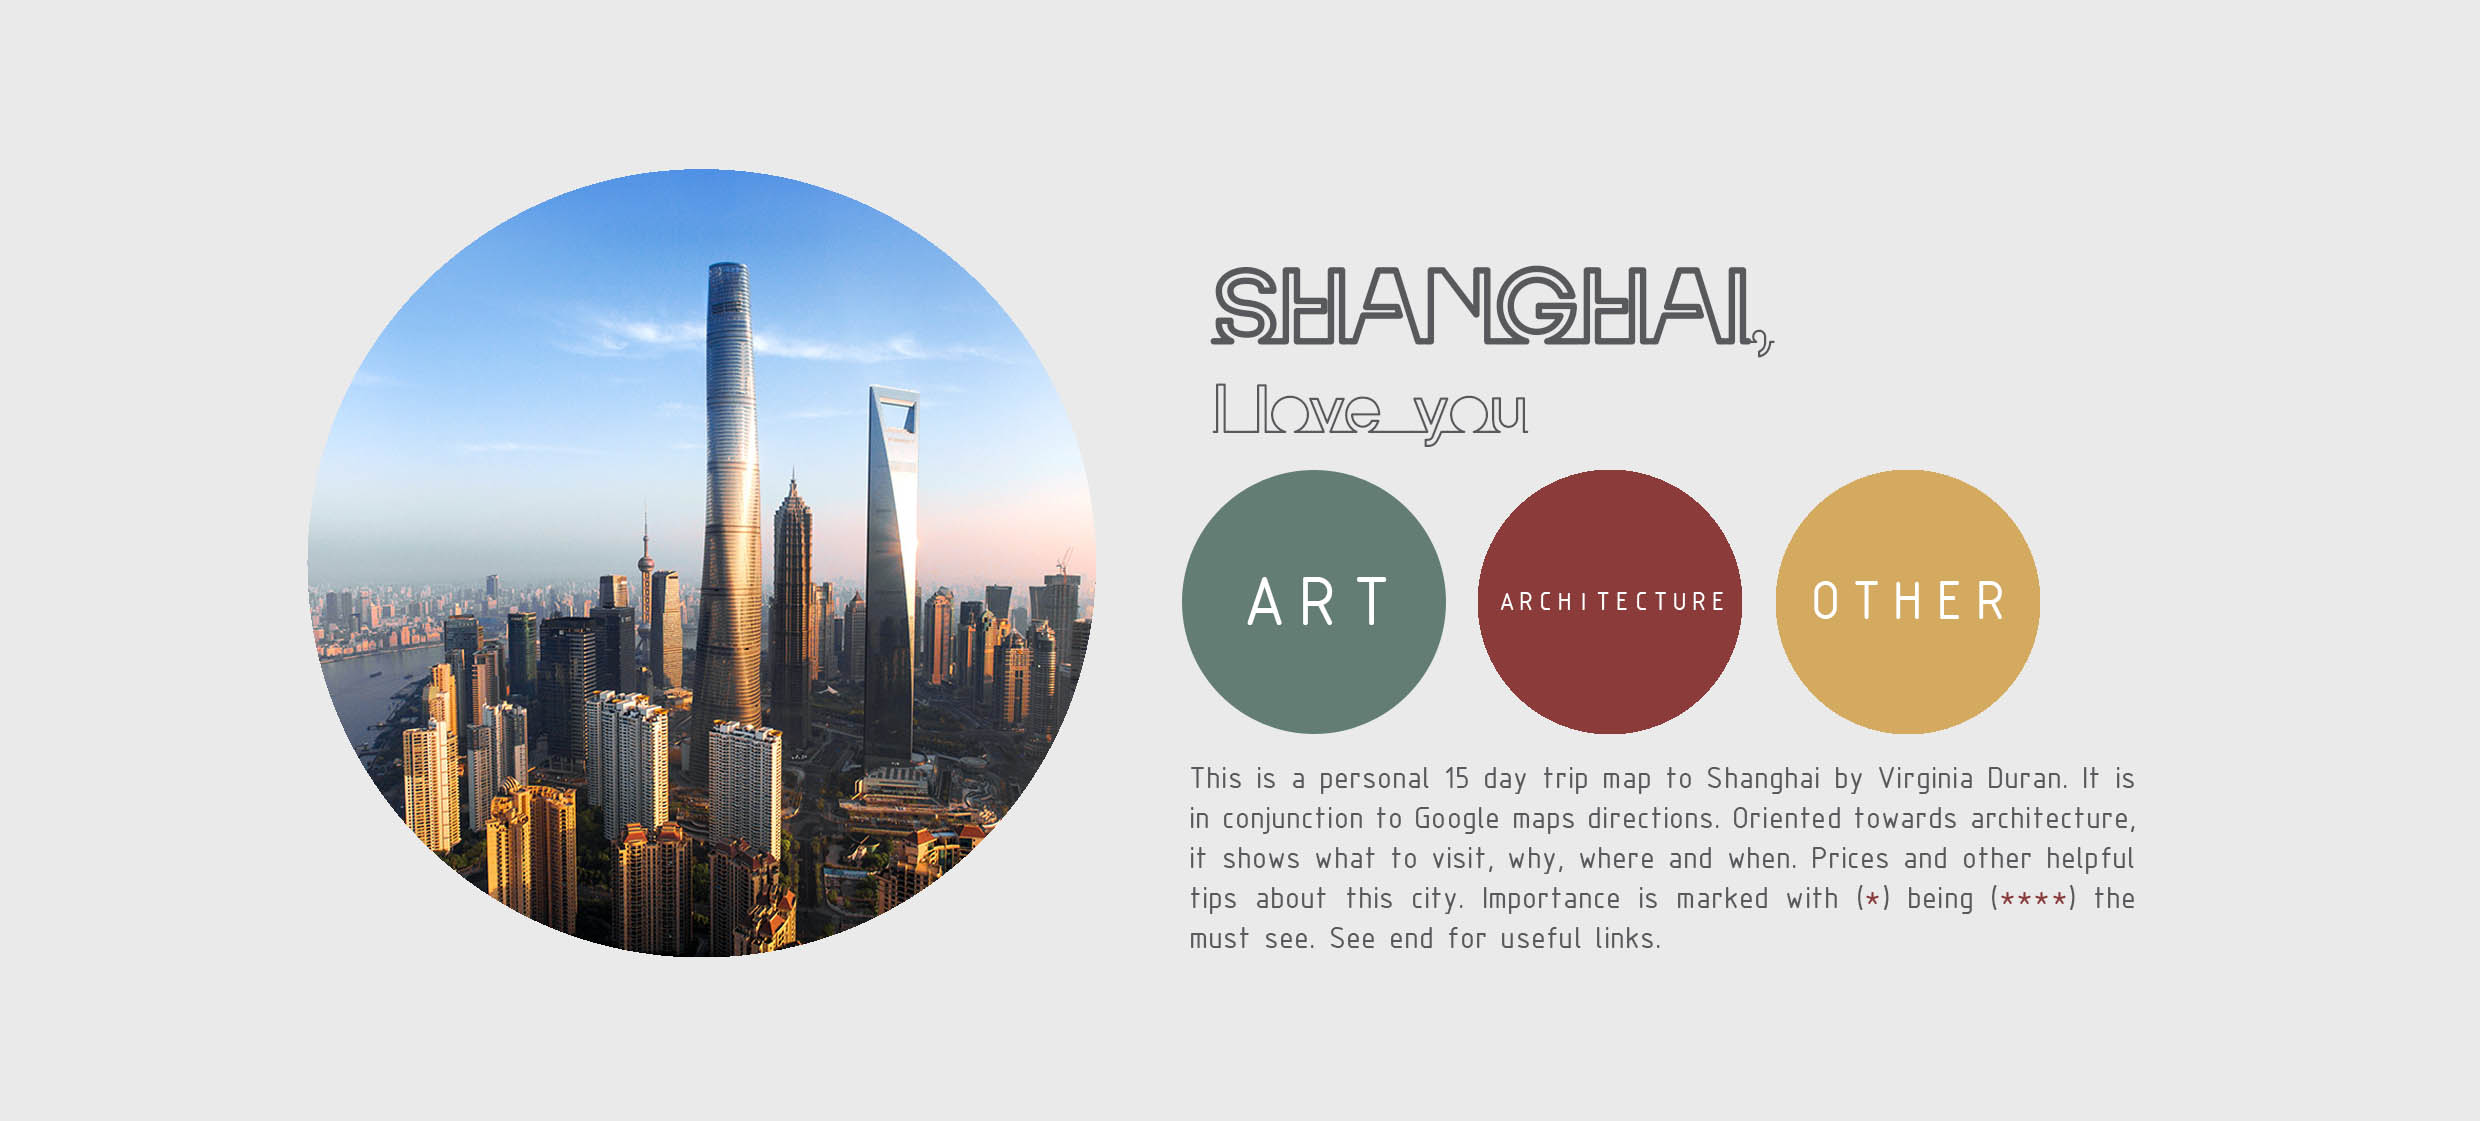 Virginia Duran Blog- Shanghai Architecture Guide 2017